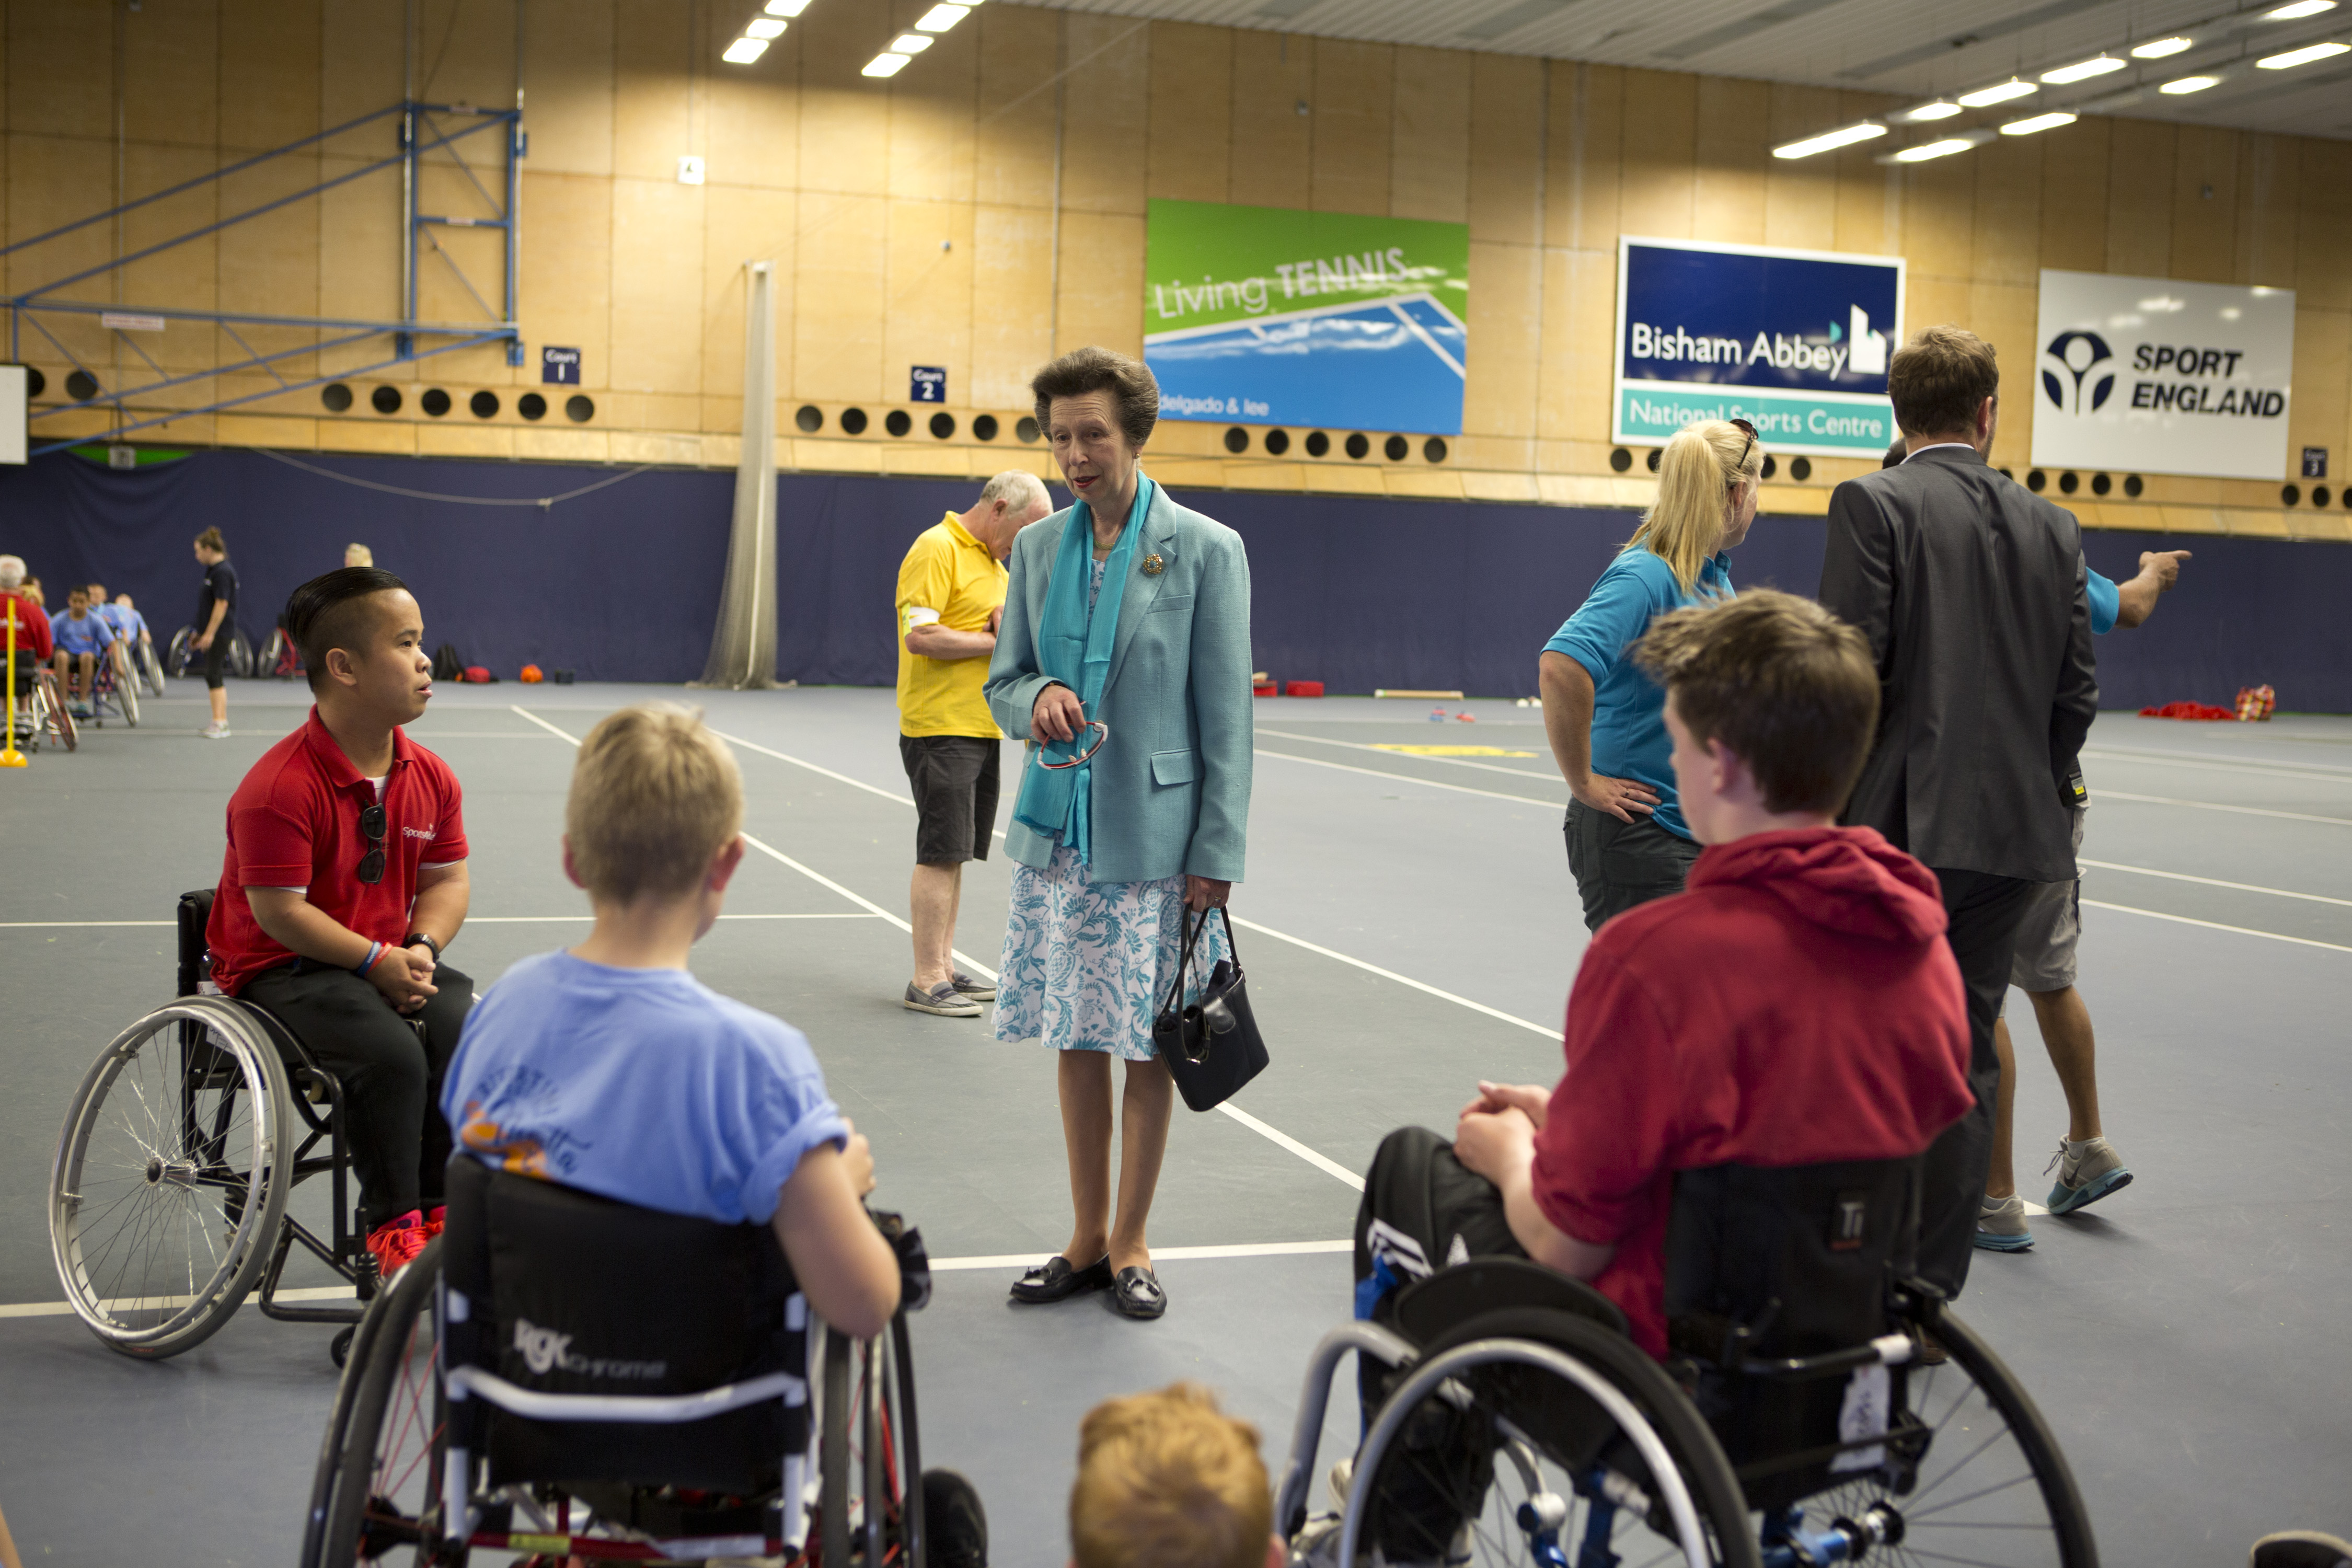 The Princess Royal meets accessible Regatta participants